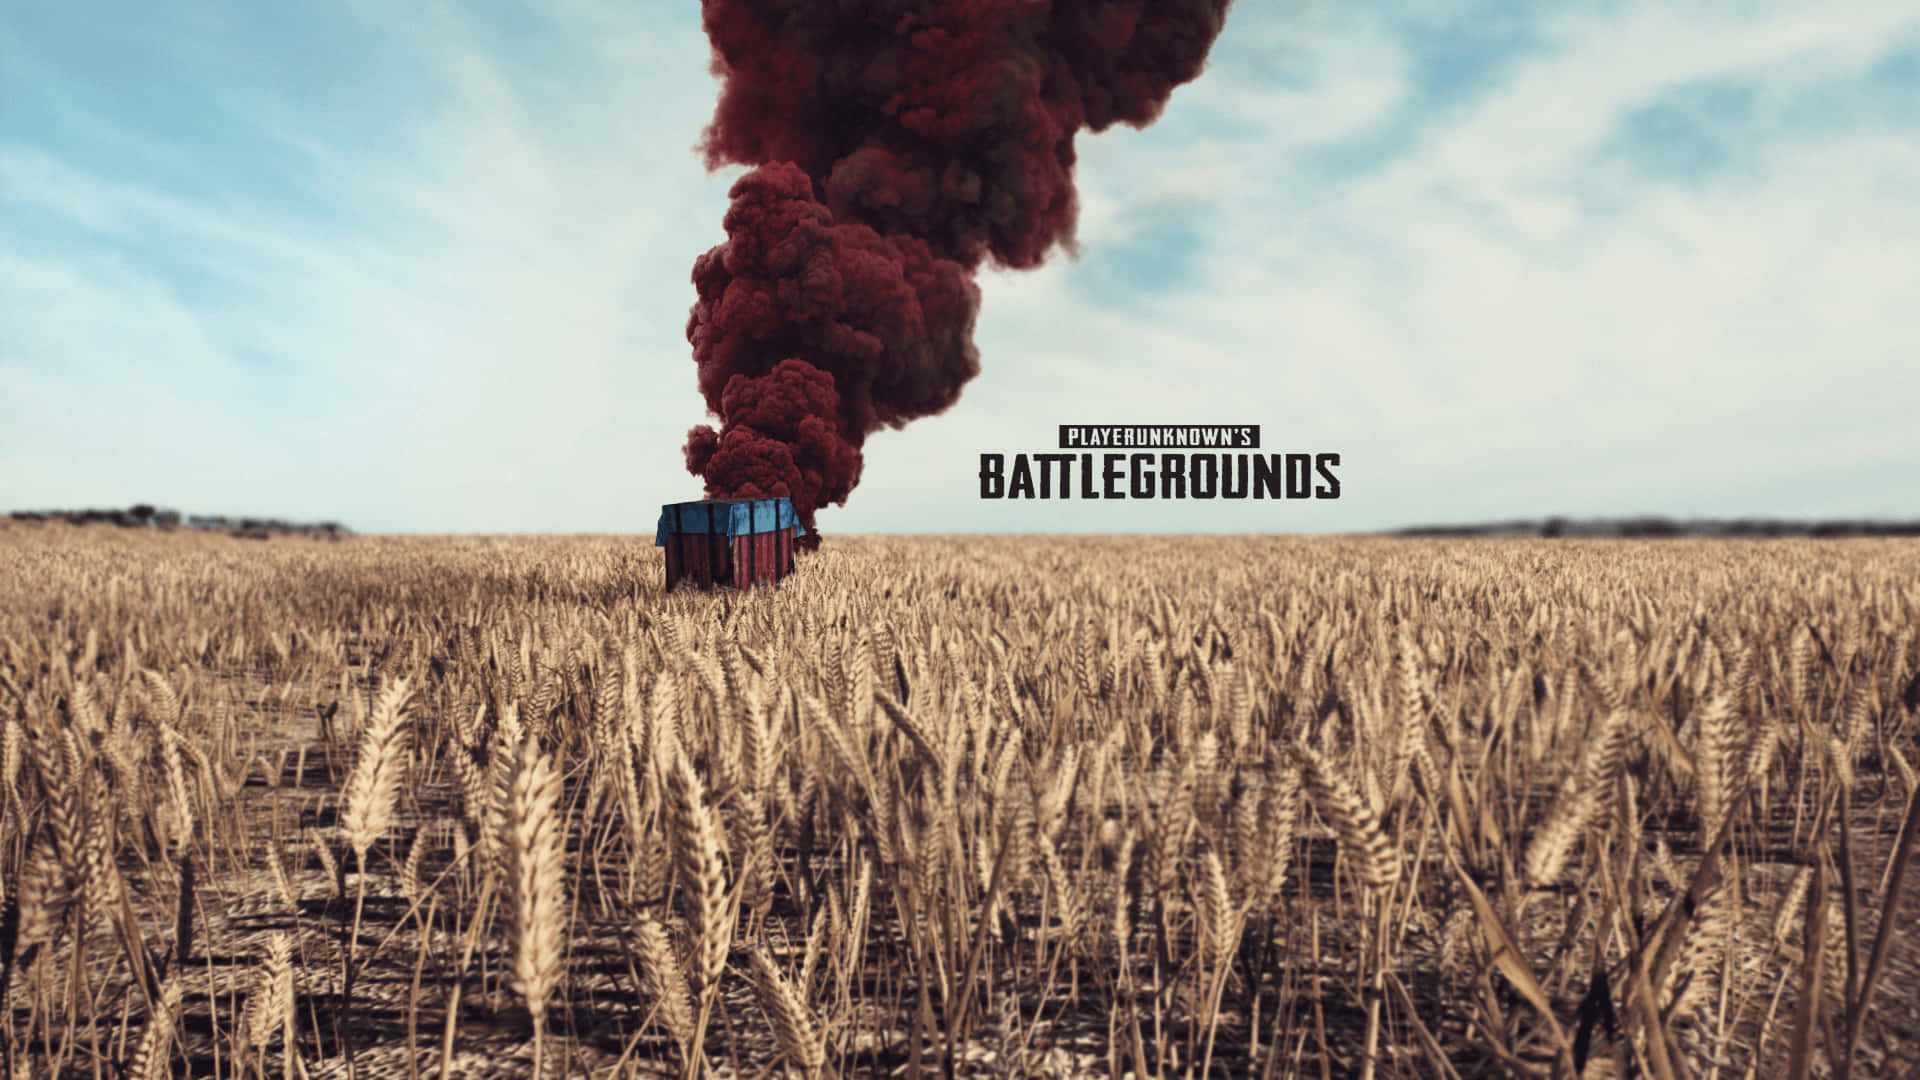 Genießensie Das Thrill Von Player Unknown Battlegrounds In Diesem Explosiven Survival-shooter-spiel. Wallpaper